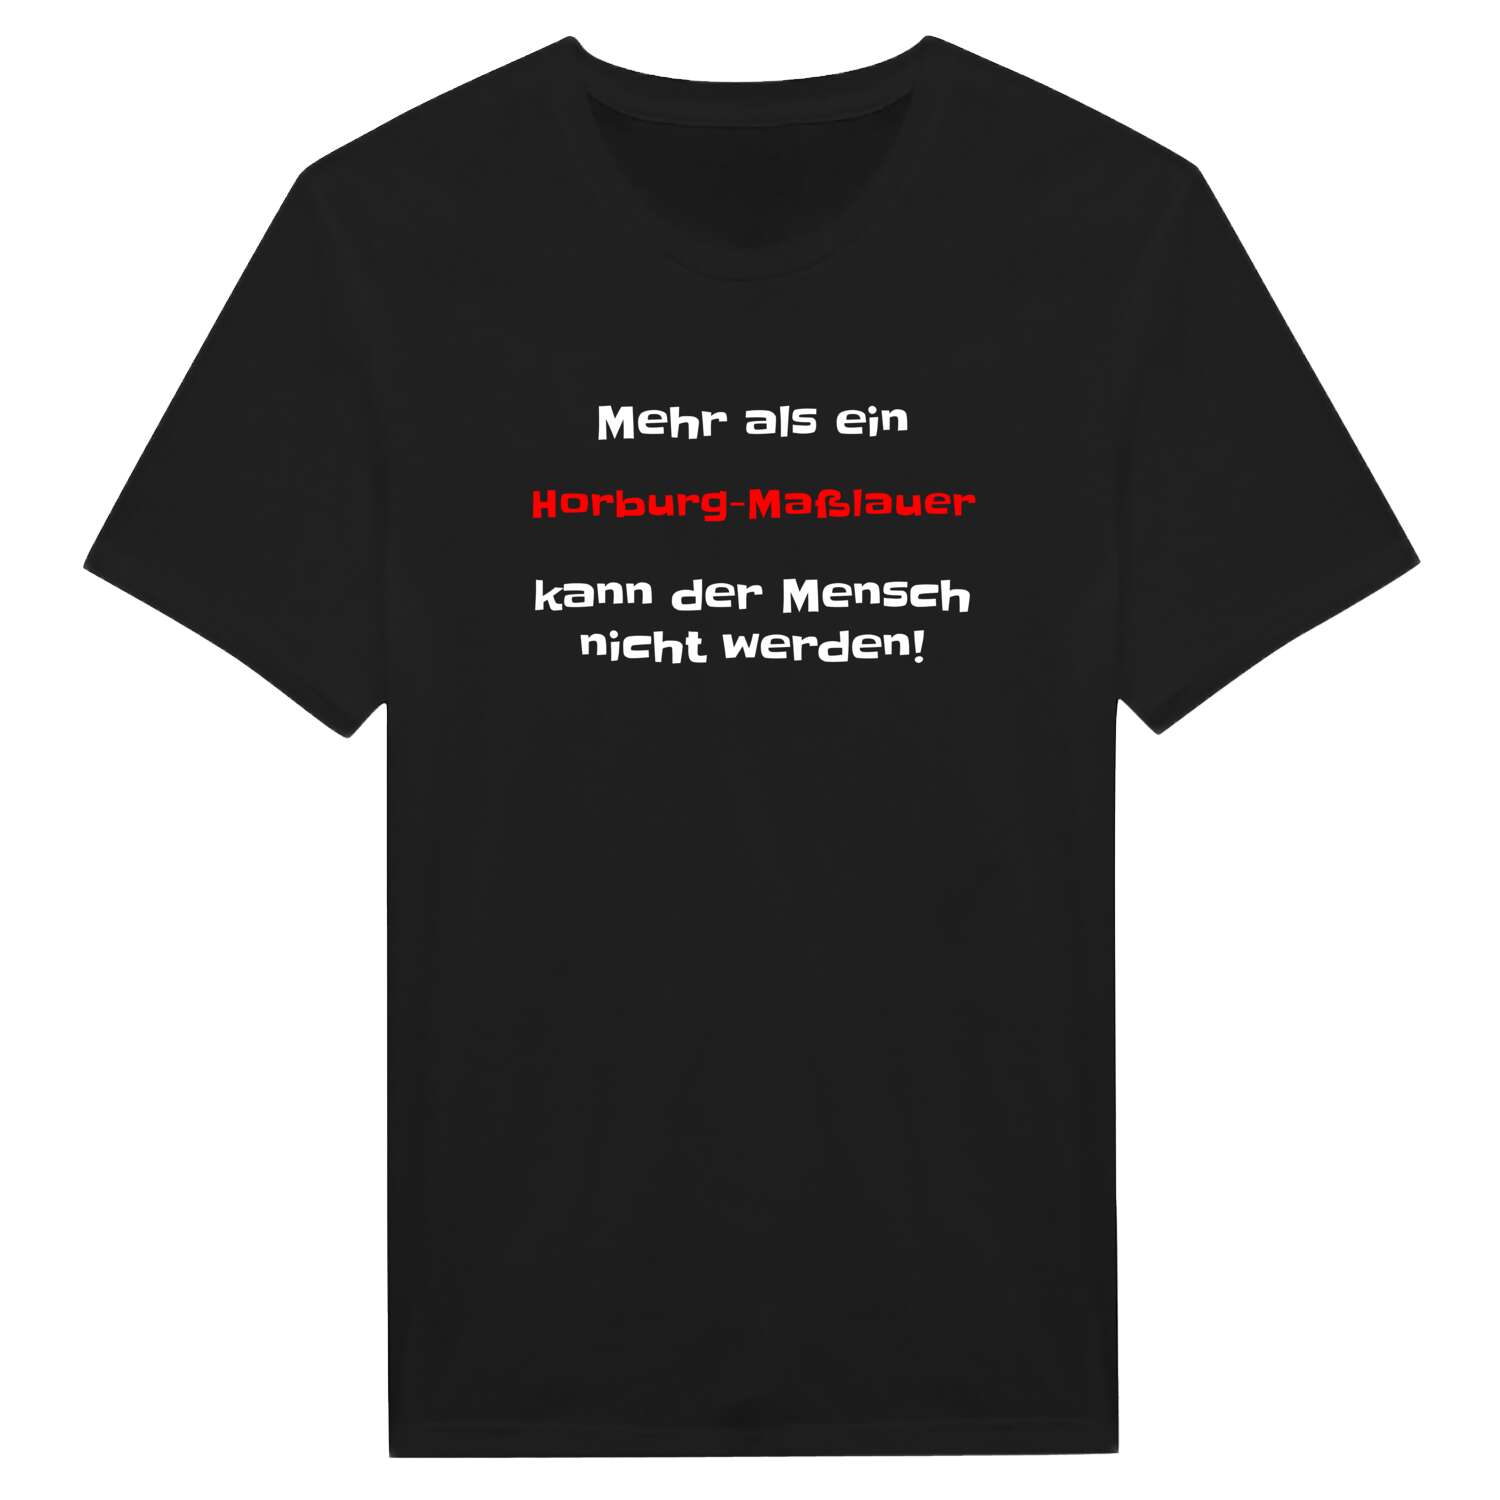 Horburg-Maßlau T-Shirt »Mehr als ein«